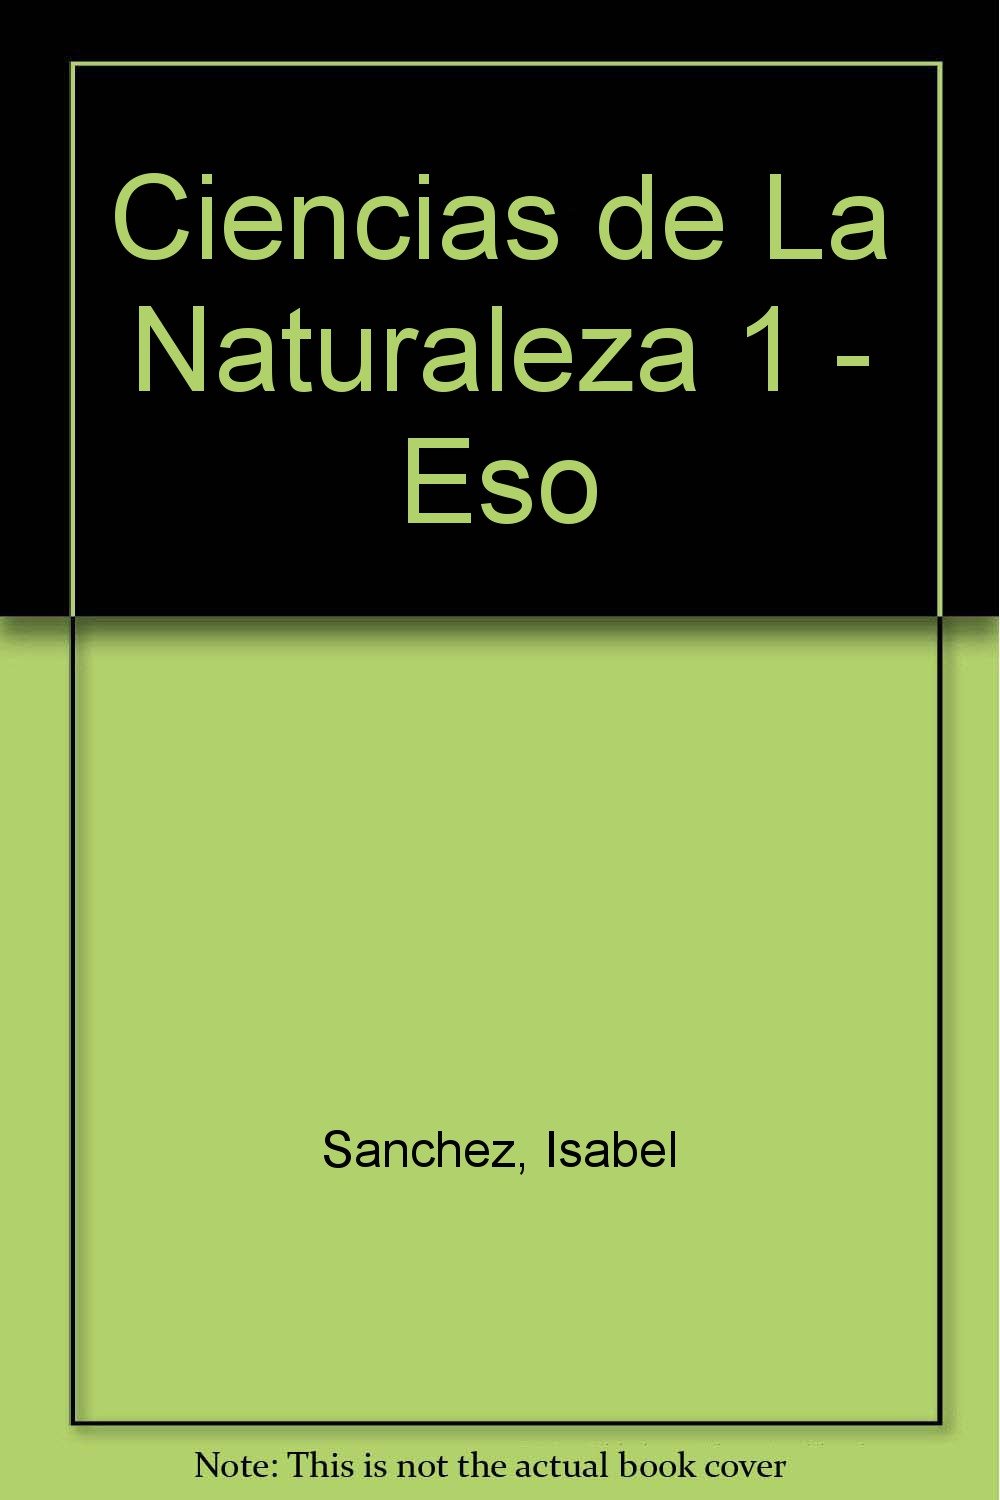 Libro: Ciencias de La Naturaleza 1 - Eso por Isabel Sánchez